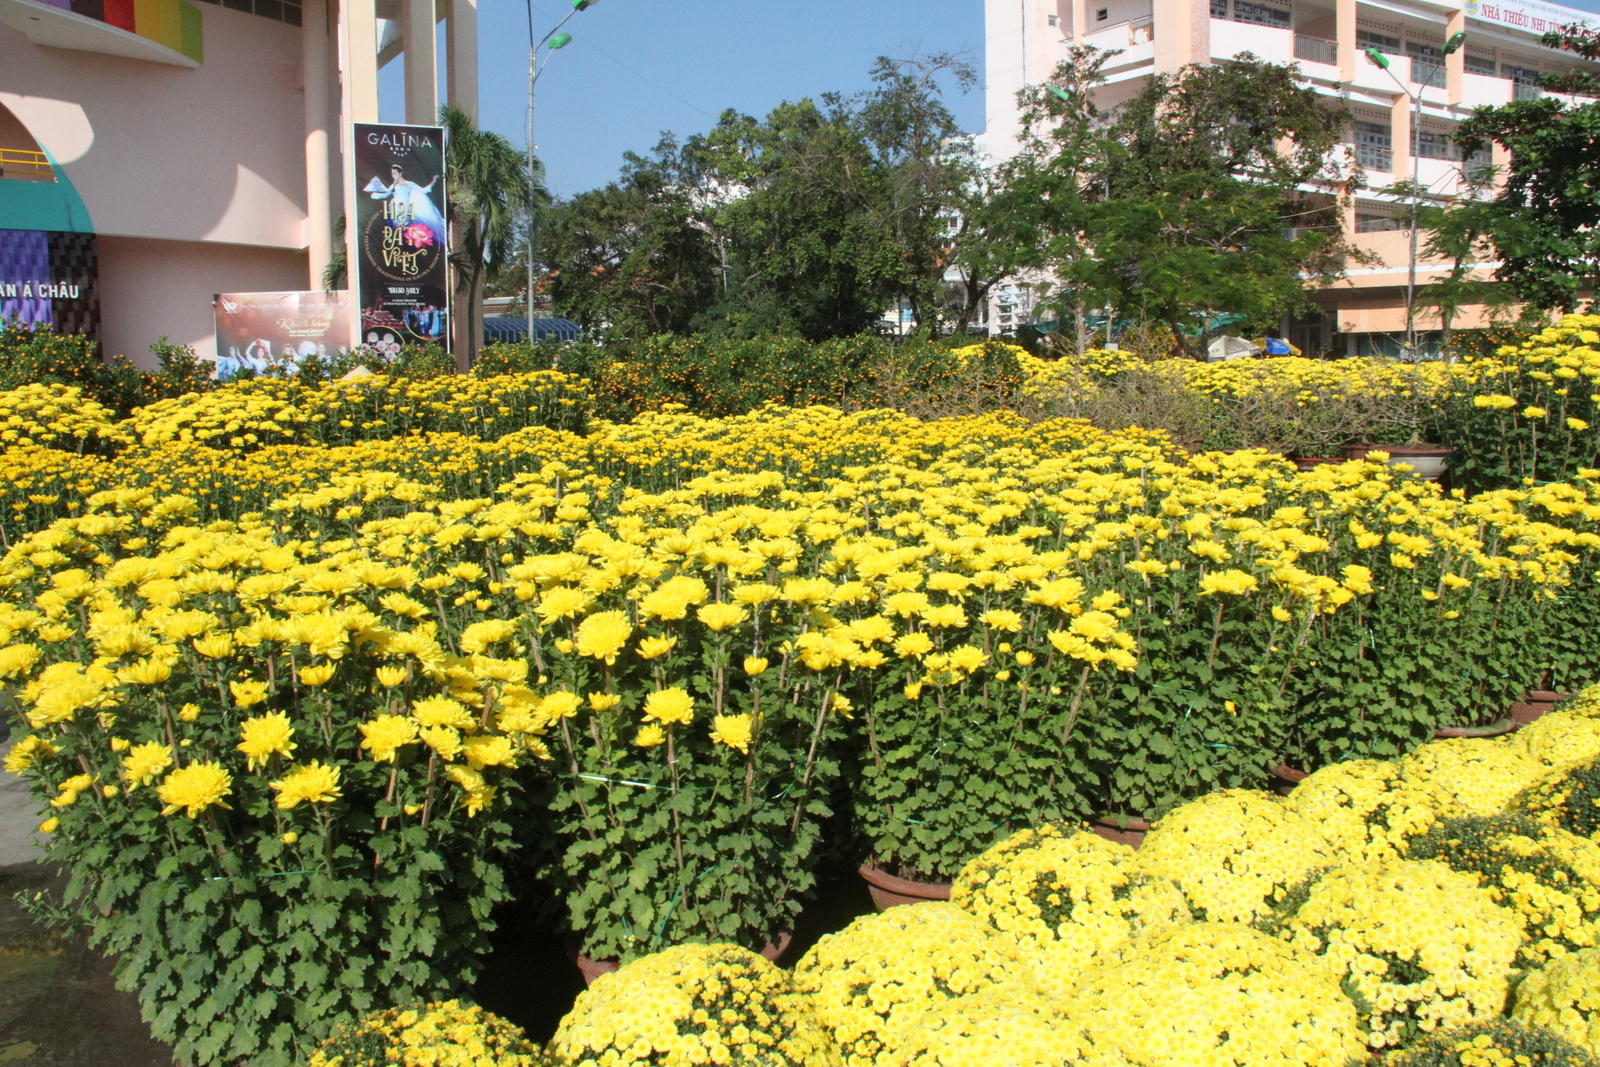 Hoa cúc khoe sắc rực rỡ tại Nhà thiếu nhi tỉnh Khánh Hòa